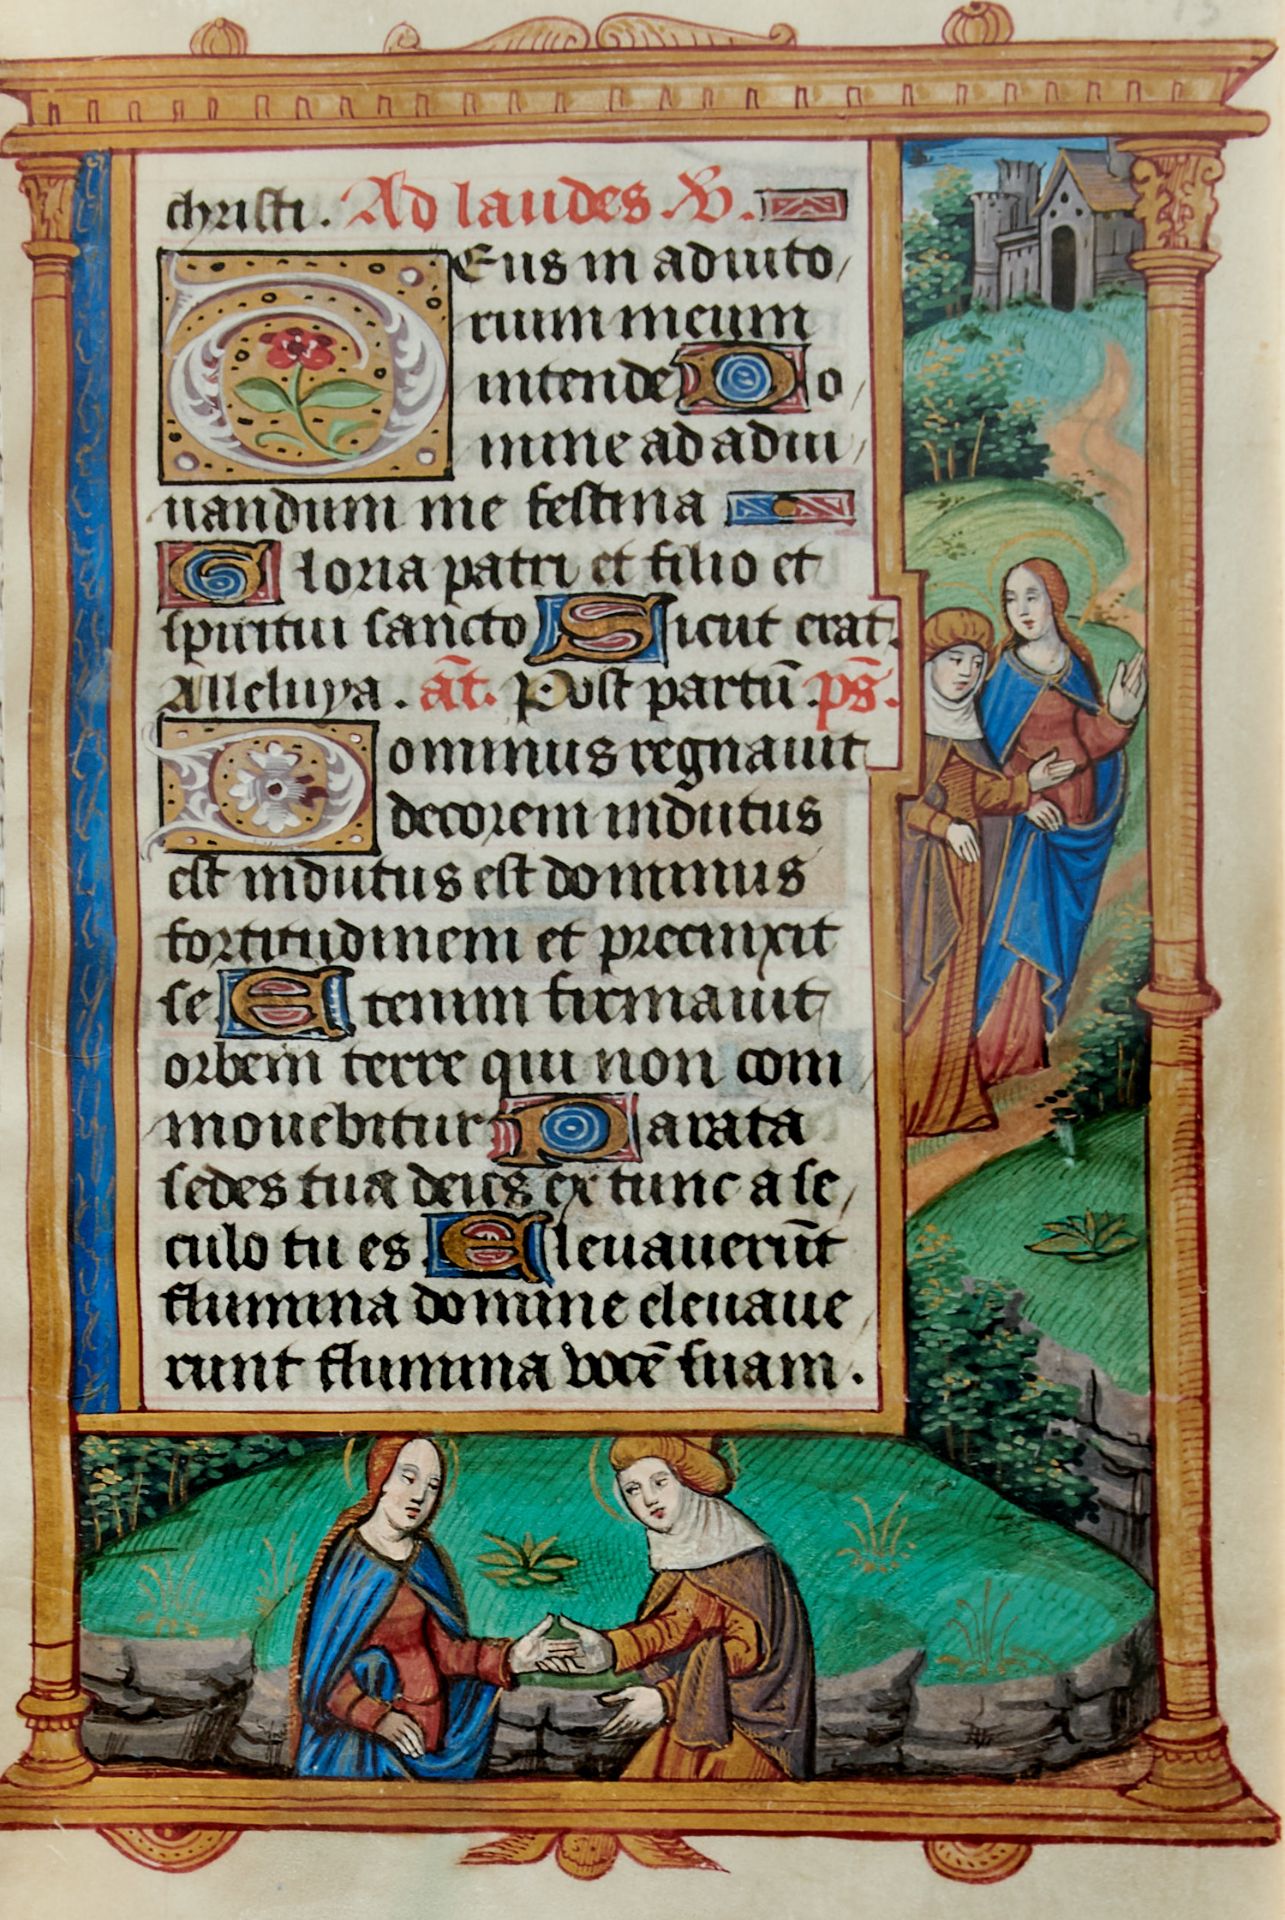 Pariser Stundenbuch. Lateinische Handschrift auf Pergament. Paris, um 1500. Ca. 14 x 10 cm. - Image 6 of 26